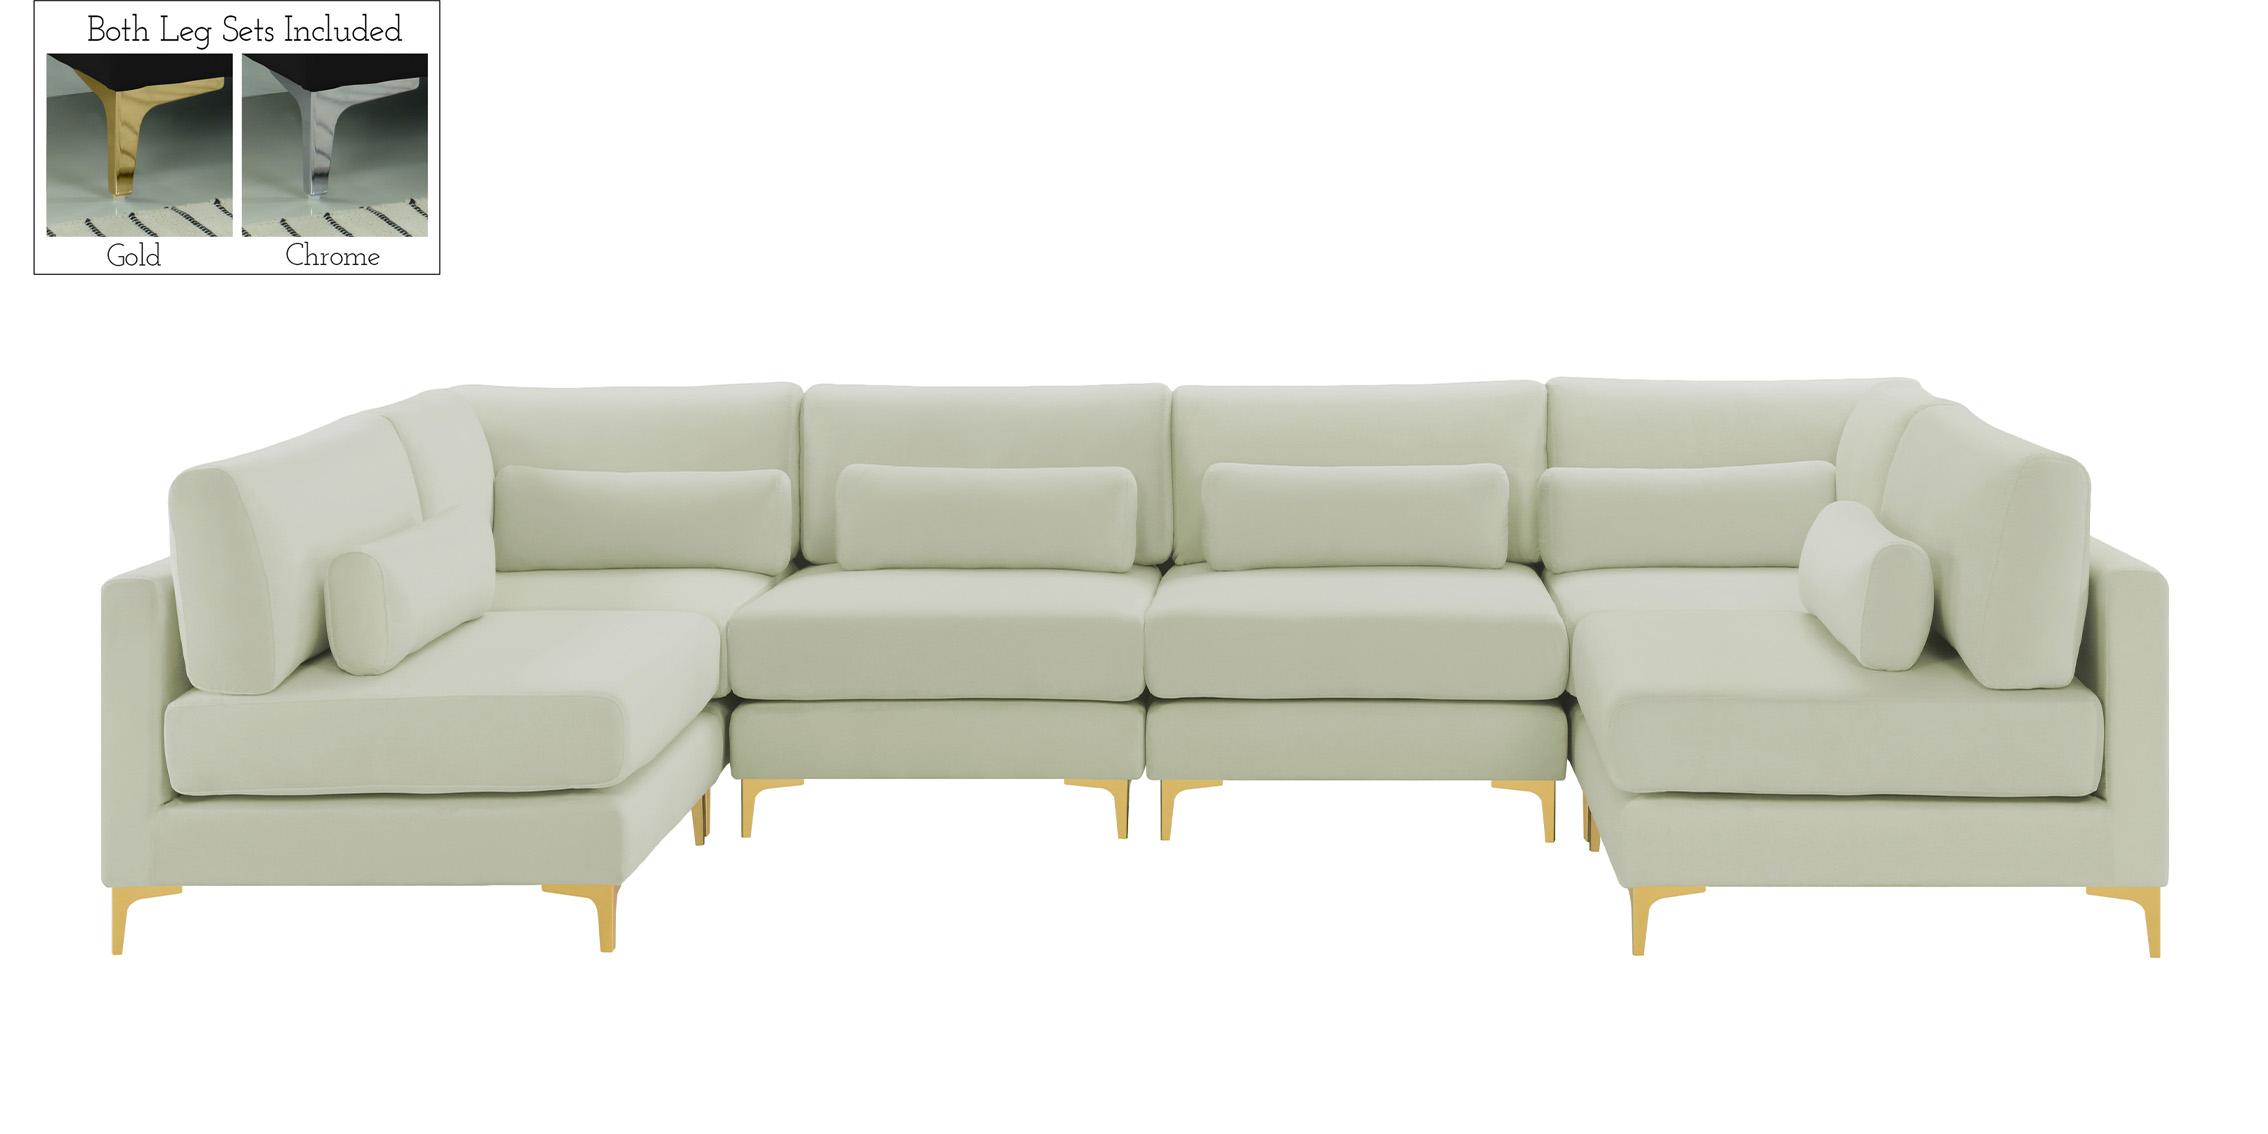 

    
Meridian Furniture JULIA 605Cream-Sec6C Modular Sectional Sofa Cream 605Cream-Sec6C
